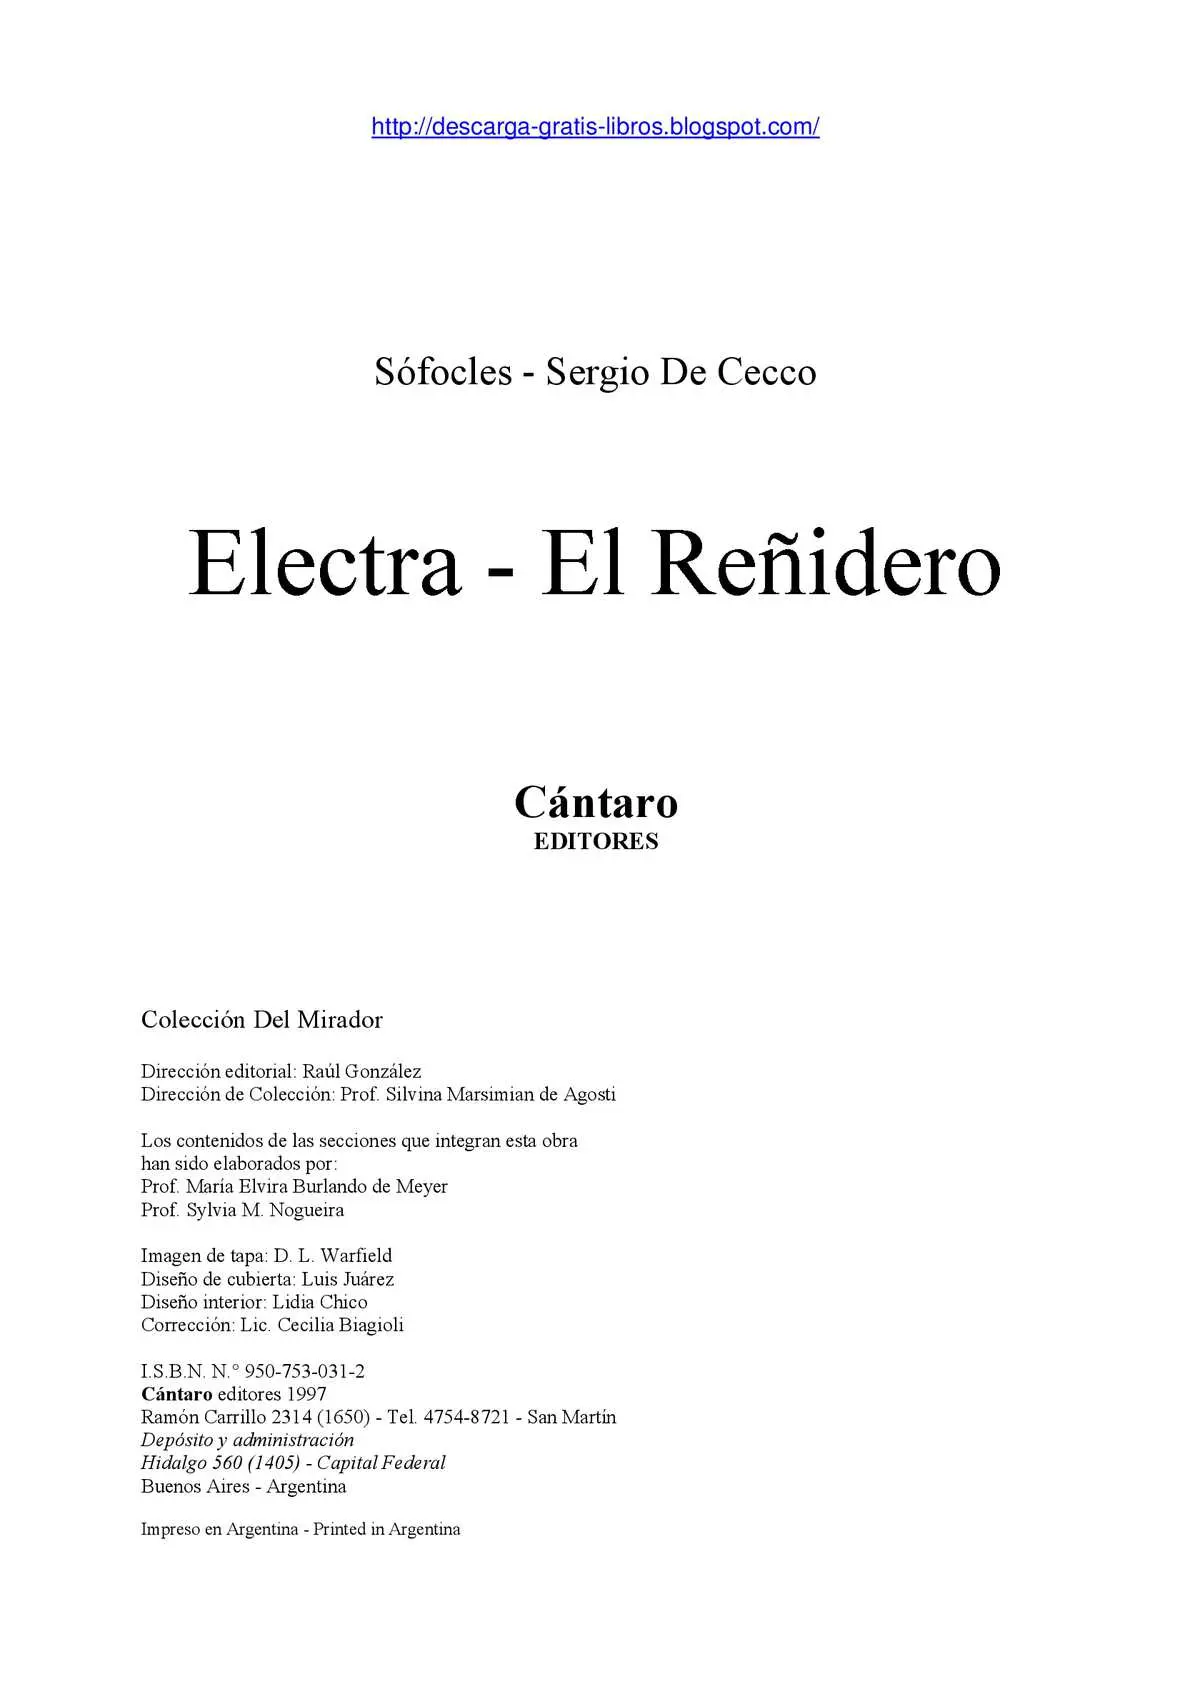 electra y el reñidero resumen - Cuál es el tema principal de la obra Electra